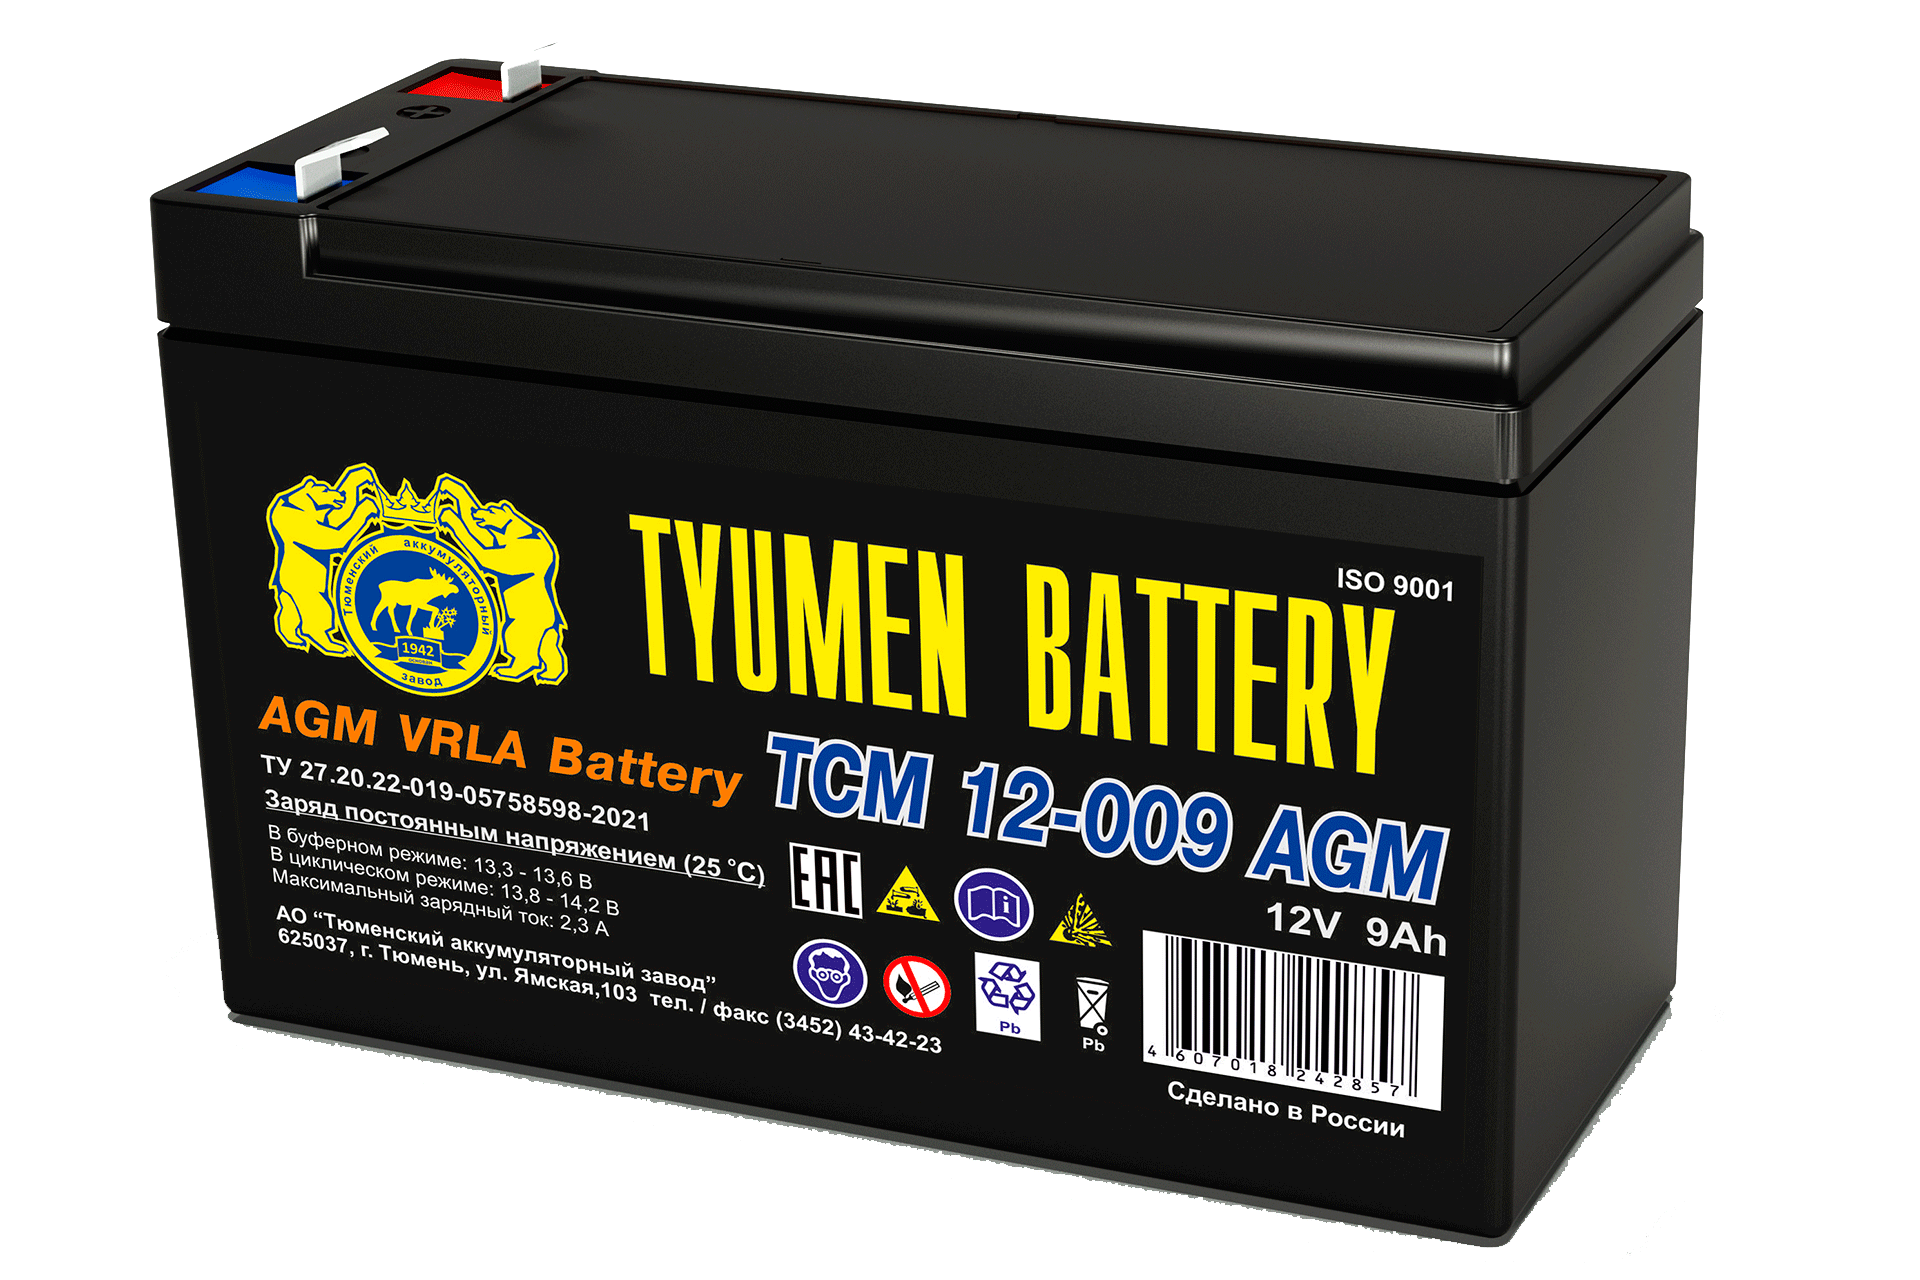 Аккумуляторная батарея Тюмень tcm-12-009